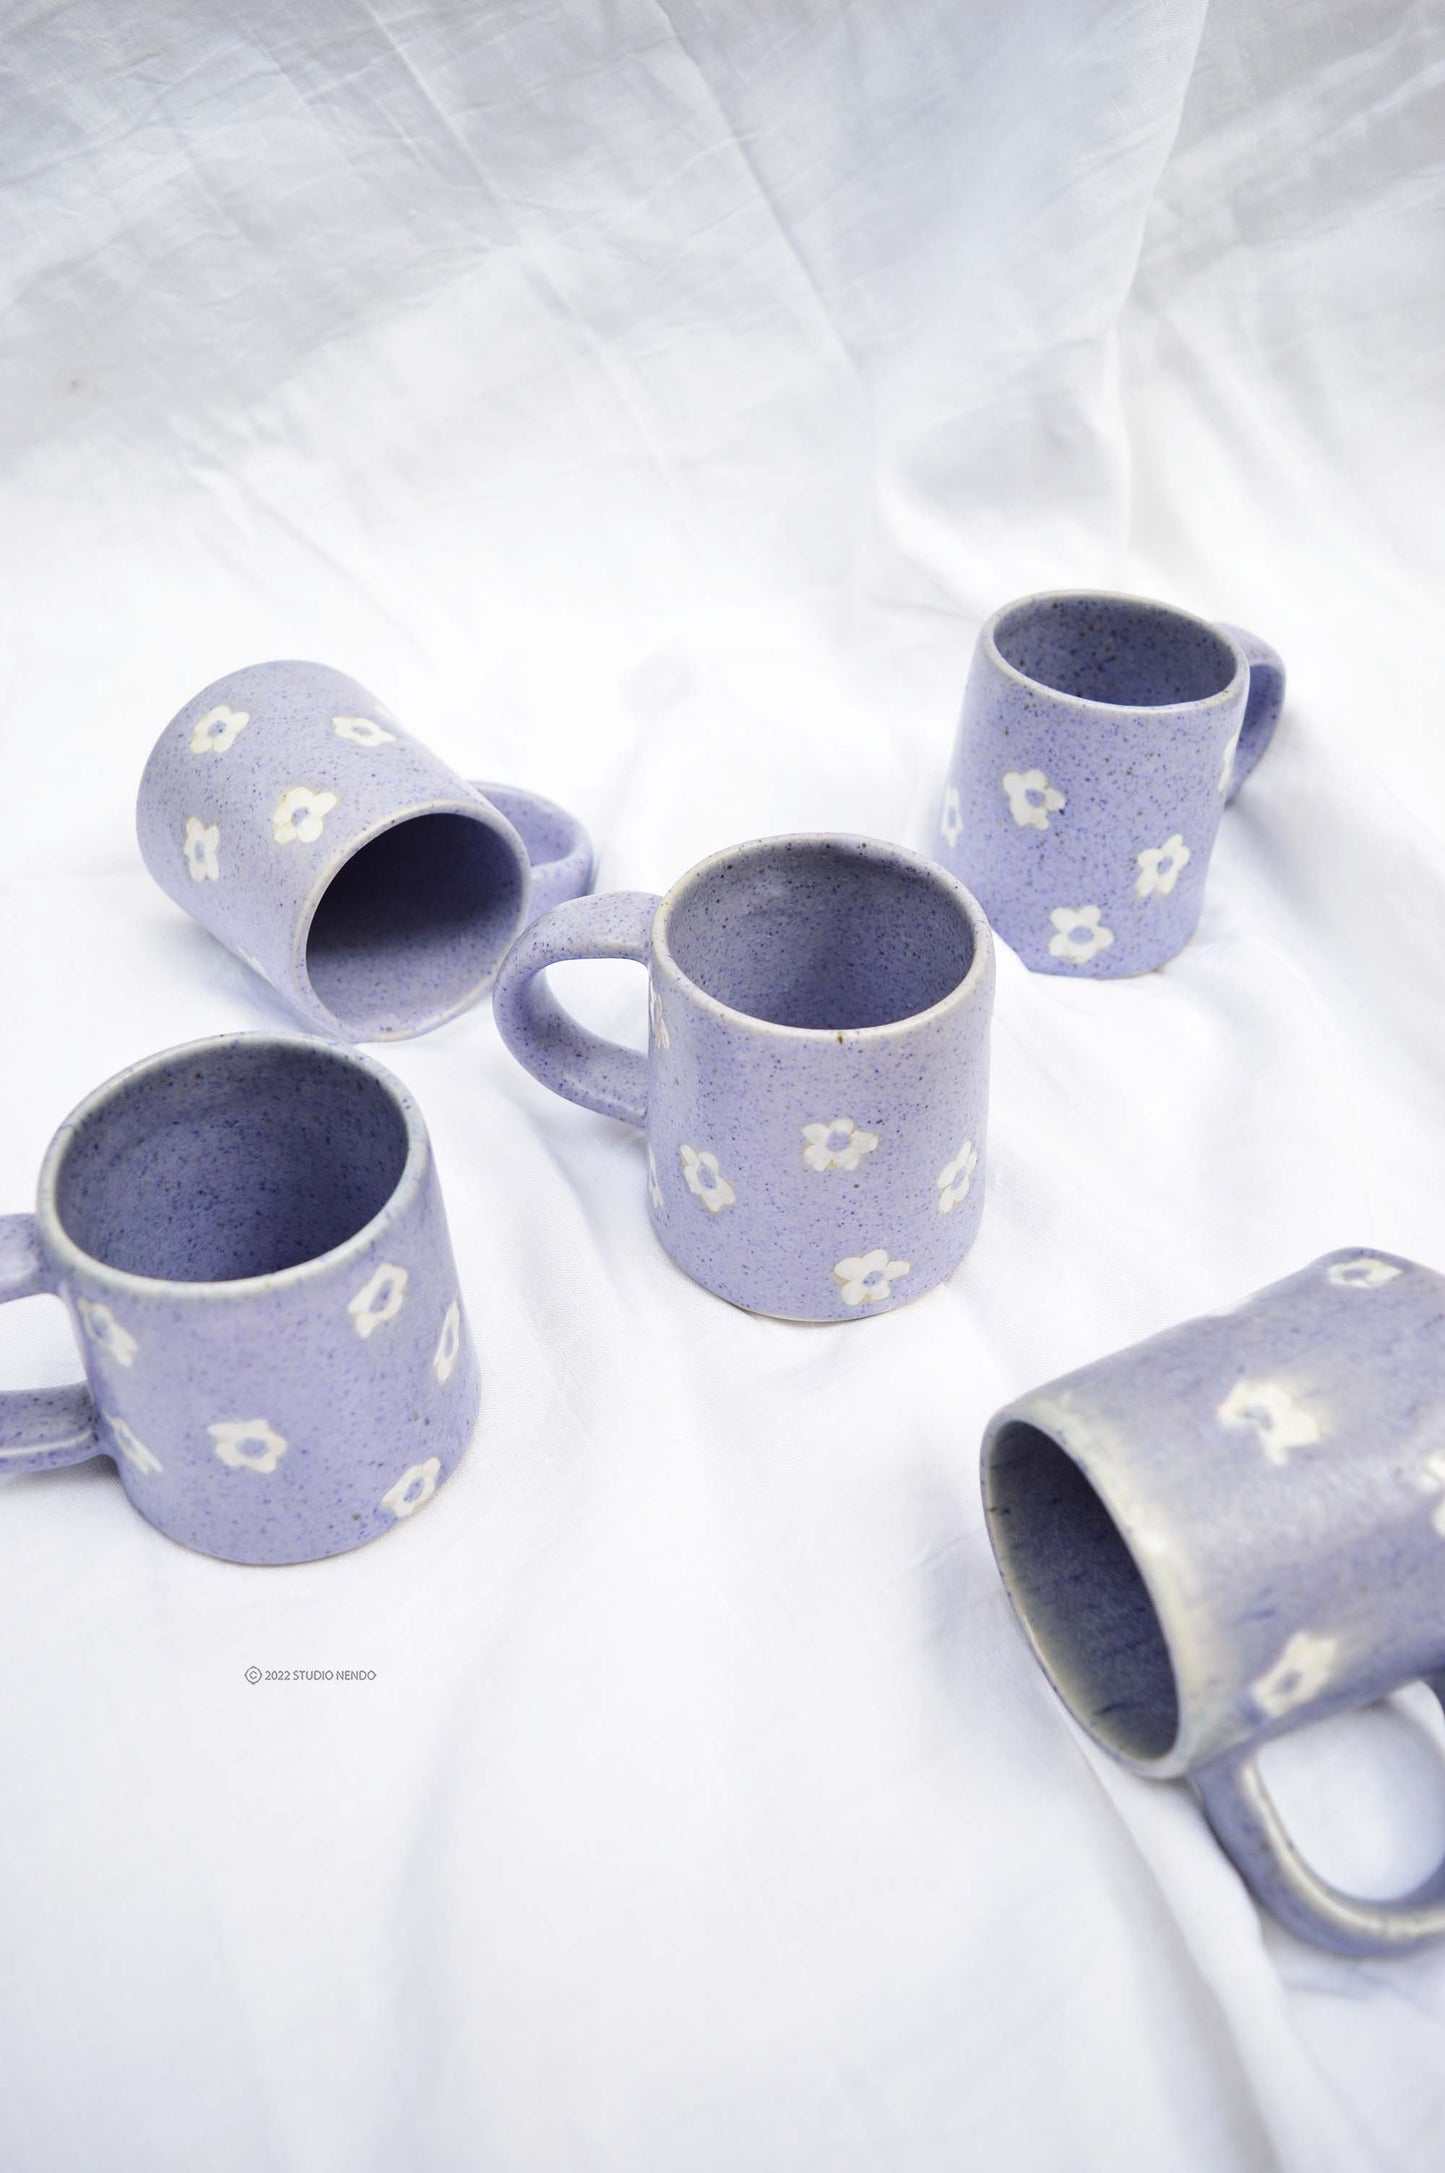 Coffee Mug- Speckled Lilac